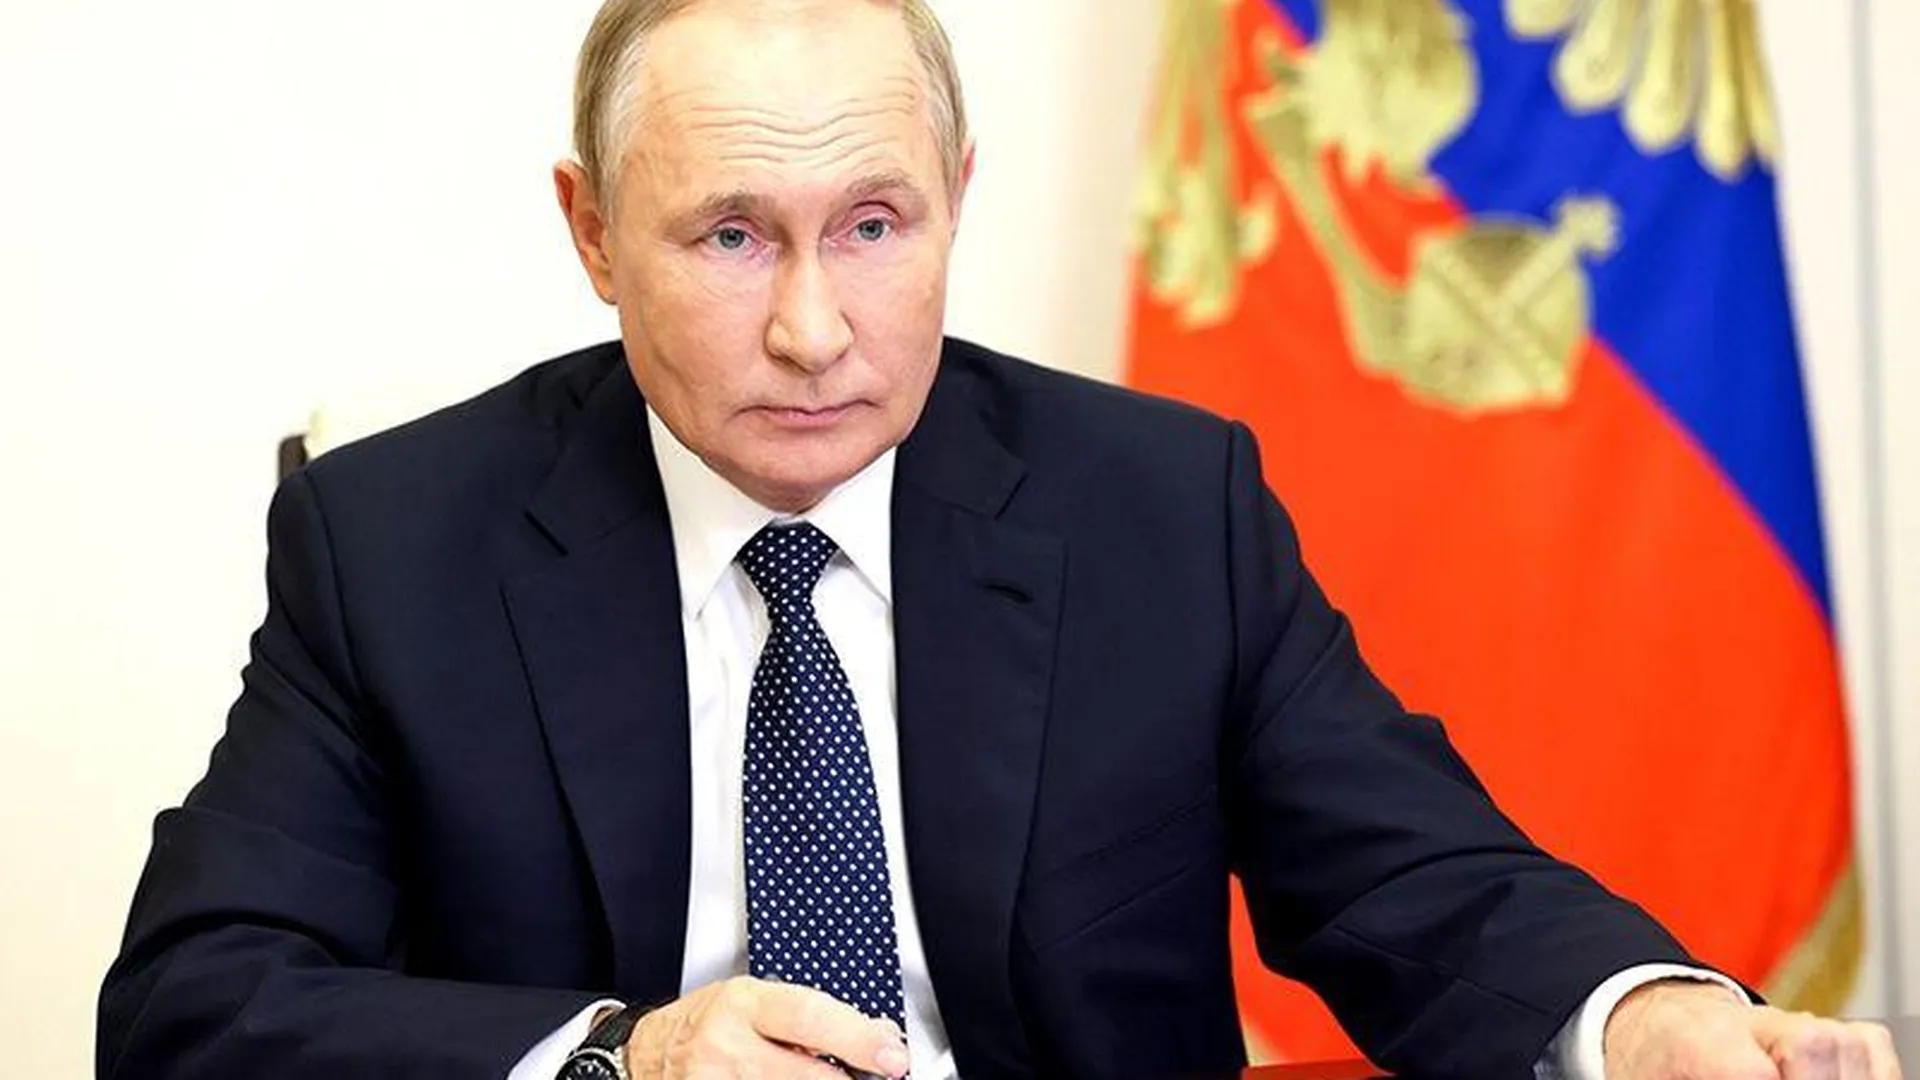 Эксперт рассказал, безопасно ли для Путина участие в G20